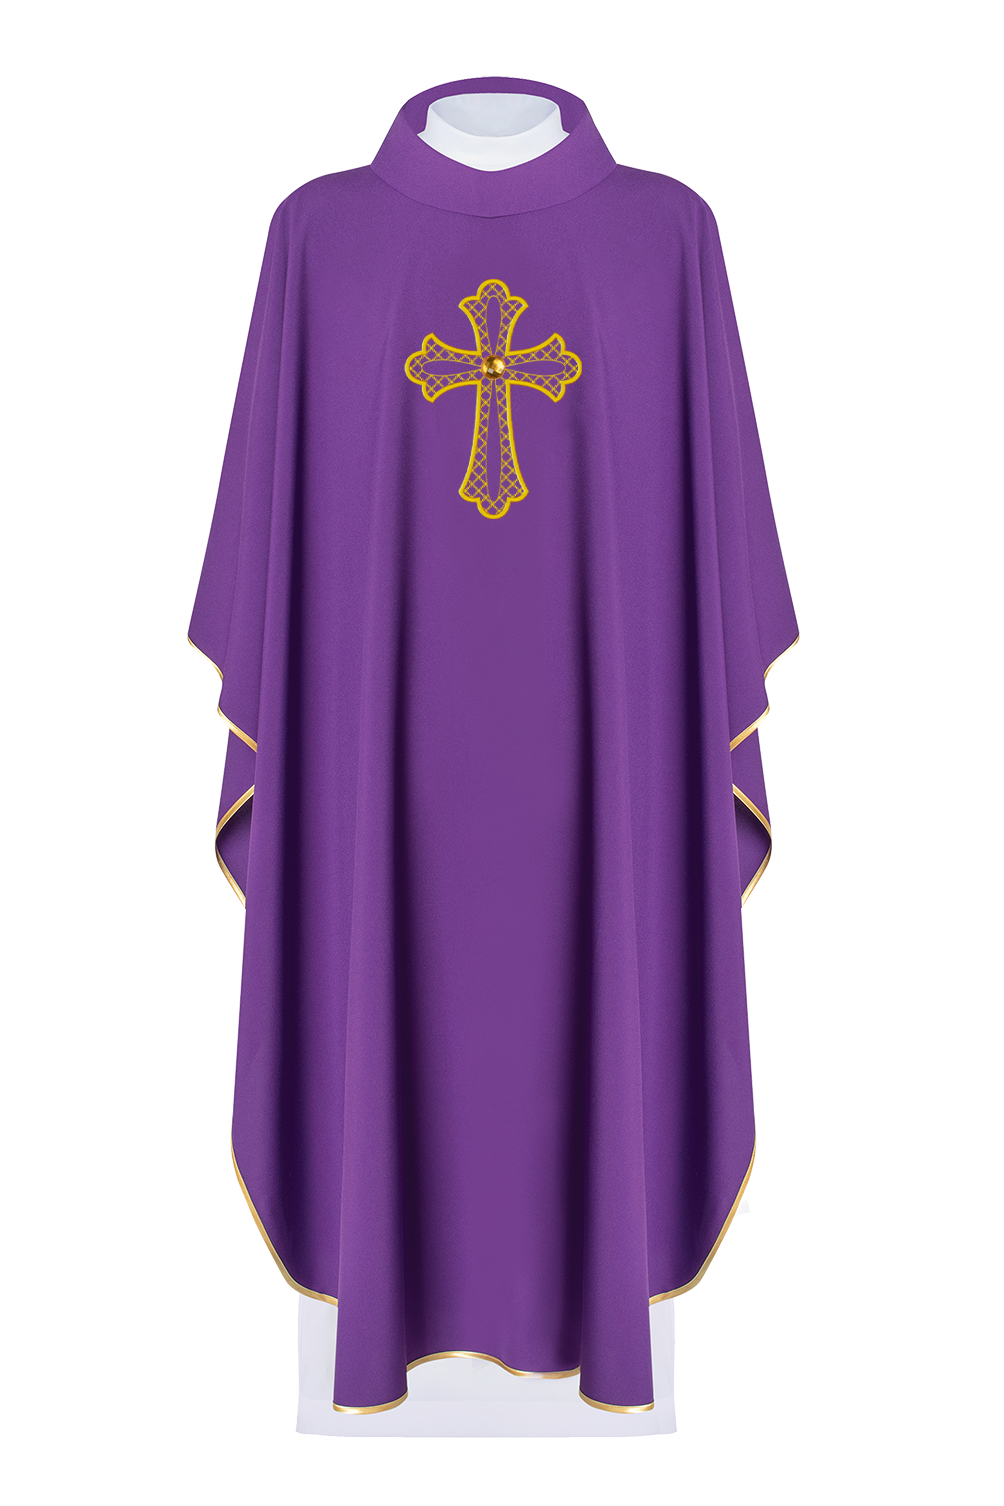 Fioletowy ornat haftowany z symbolem krzyża Fioletowy